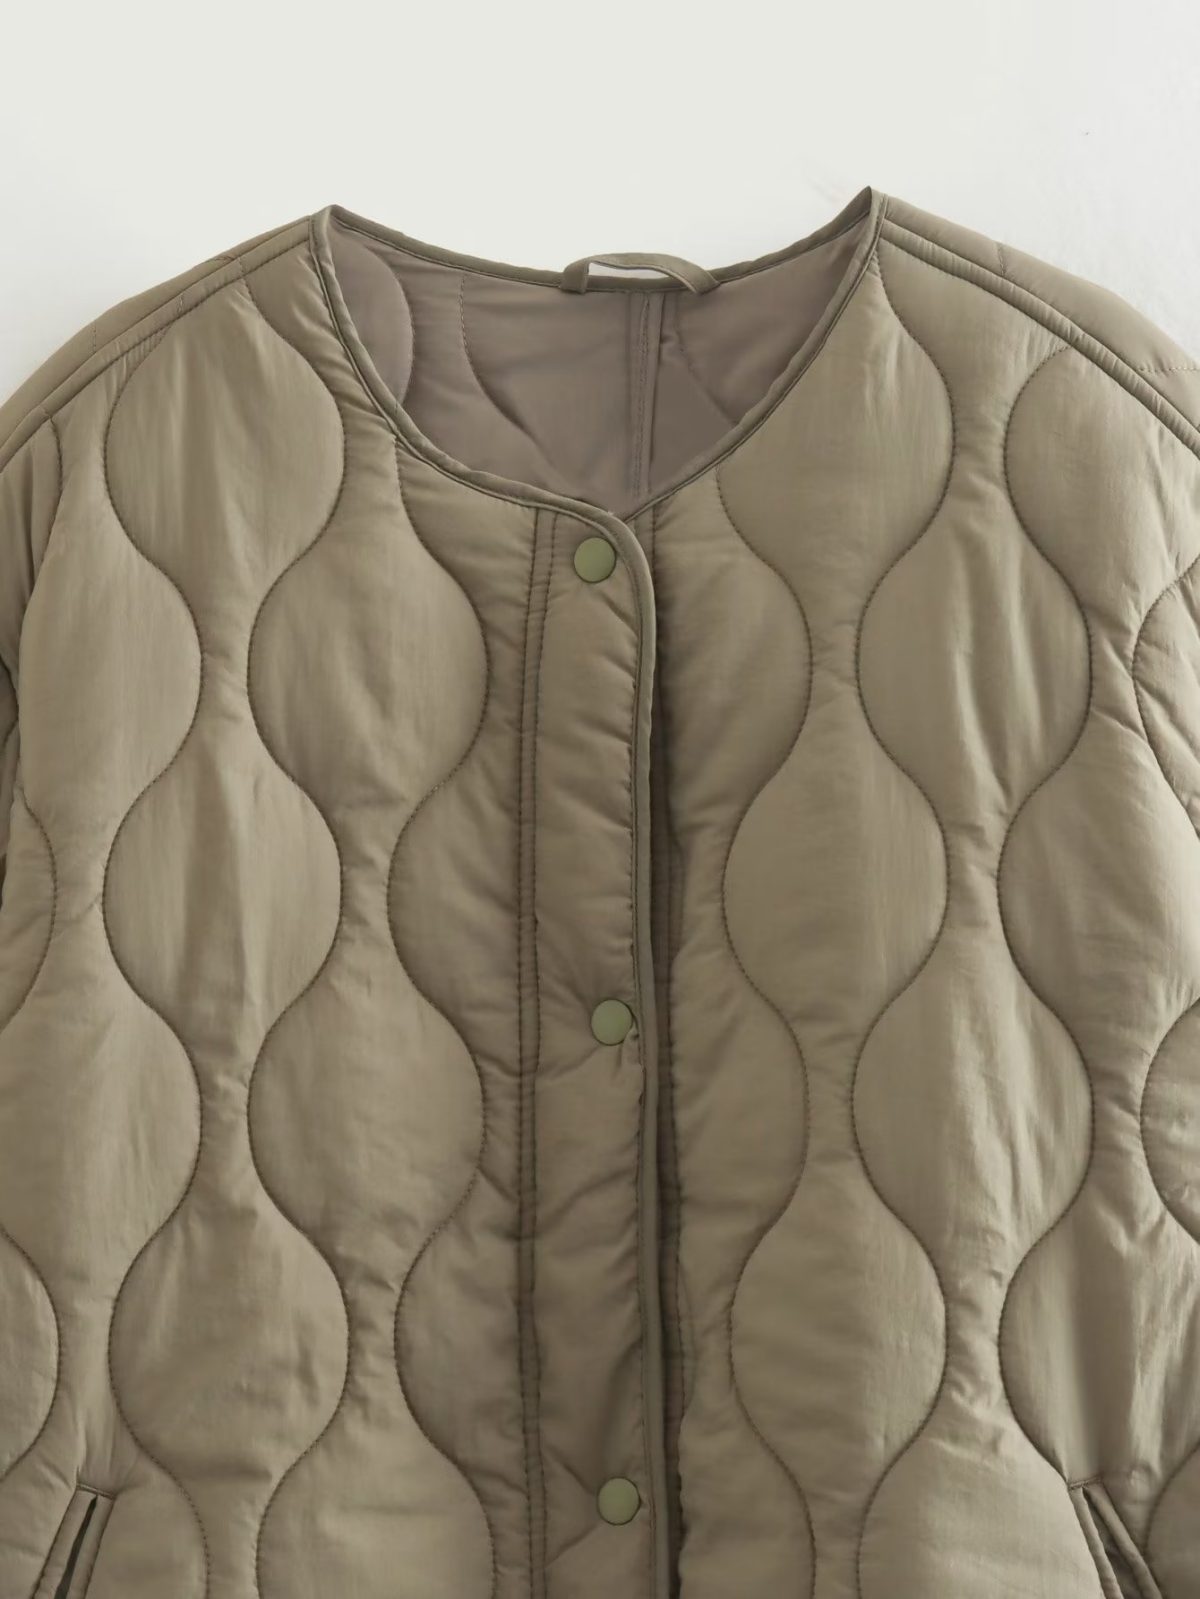 Autumn Winter Cotton Quilted Coat - Coats & Jackets - Uniqistic.com